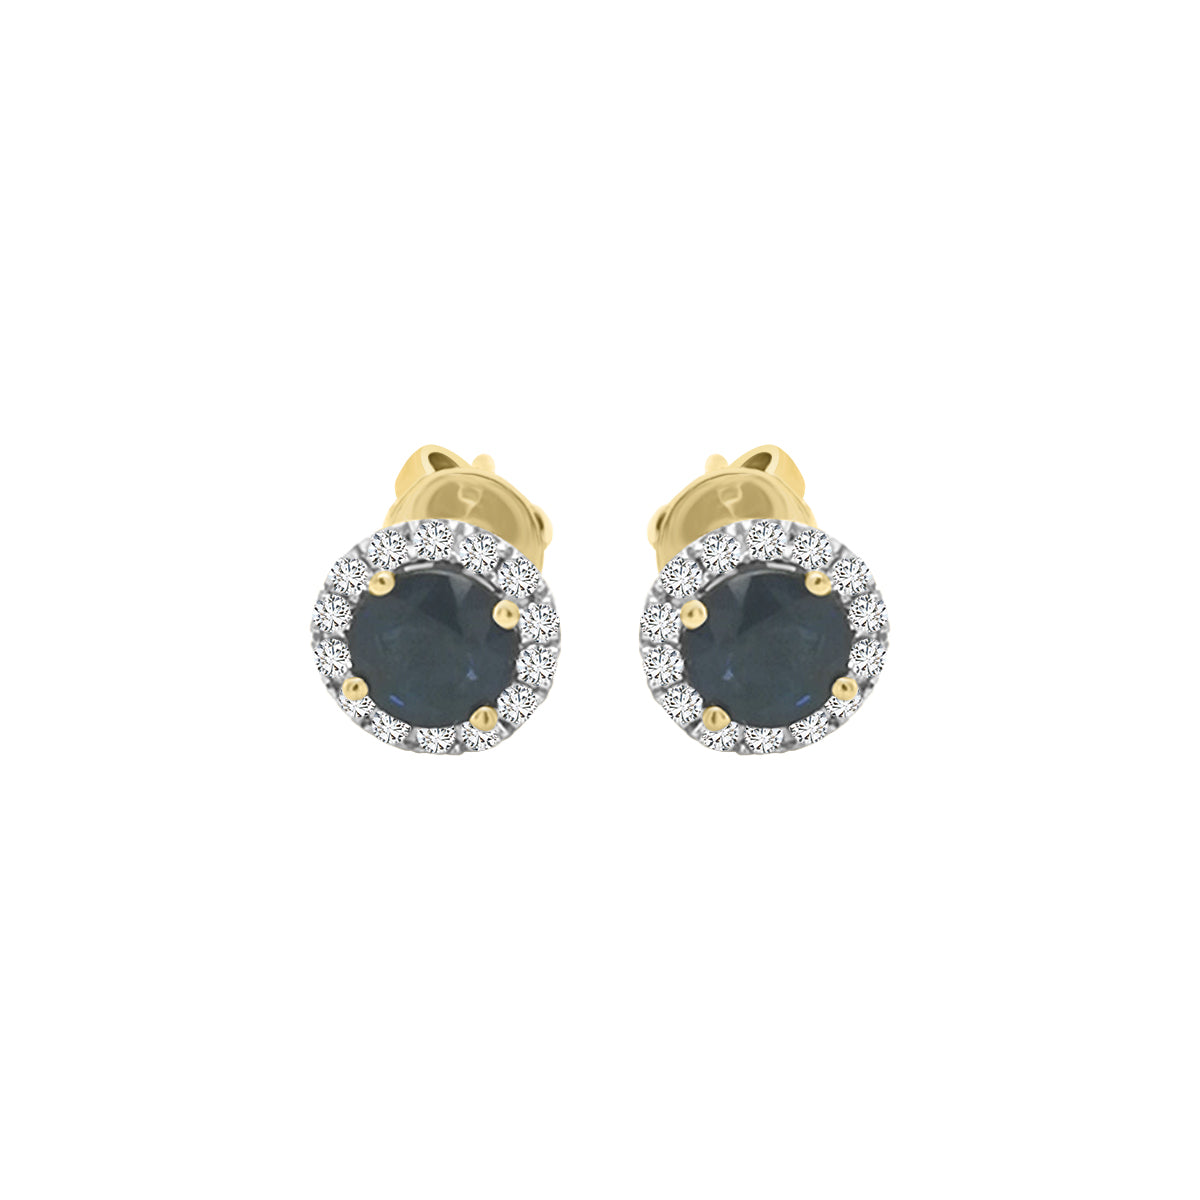 Halo Sapphire Stud Earrings In 18k yellow Gold.